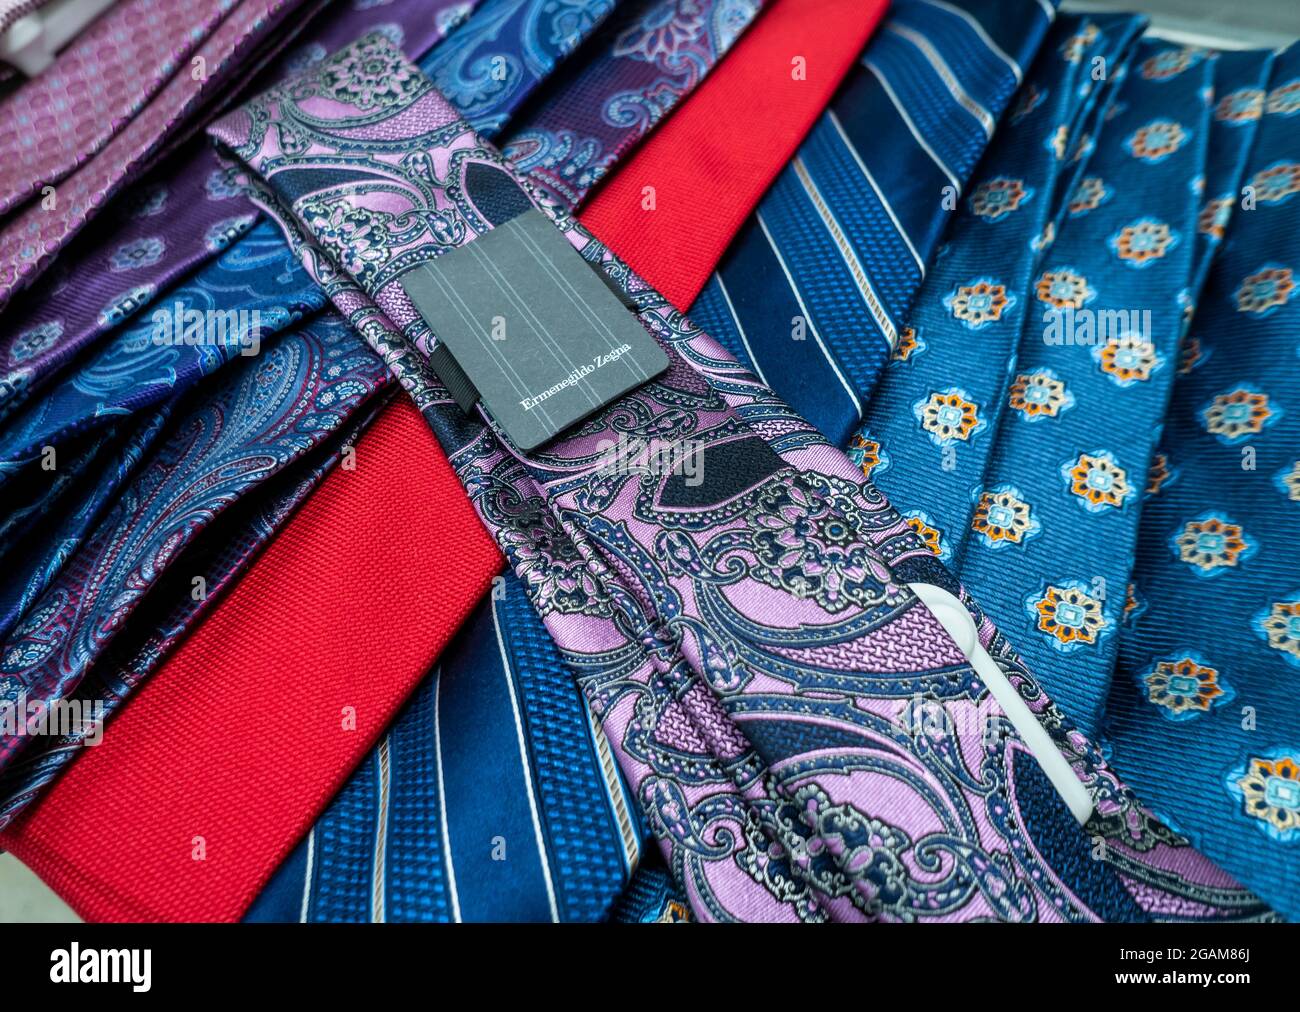 Une cravate Ermenegildo Zegna est vue dans un grand magasin à New York avec  d'autres marques le mardi 20 juillet 2021. Ermenegildo Zegna serait rendu  public par l'intermédiaire d'un SPAC, contrairement à